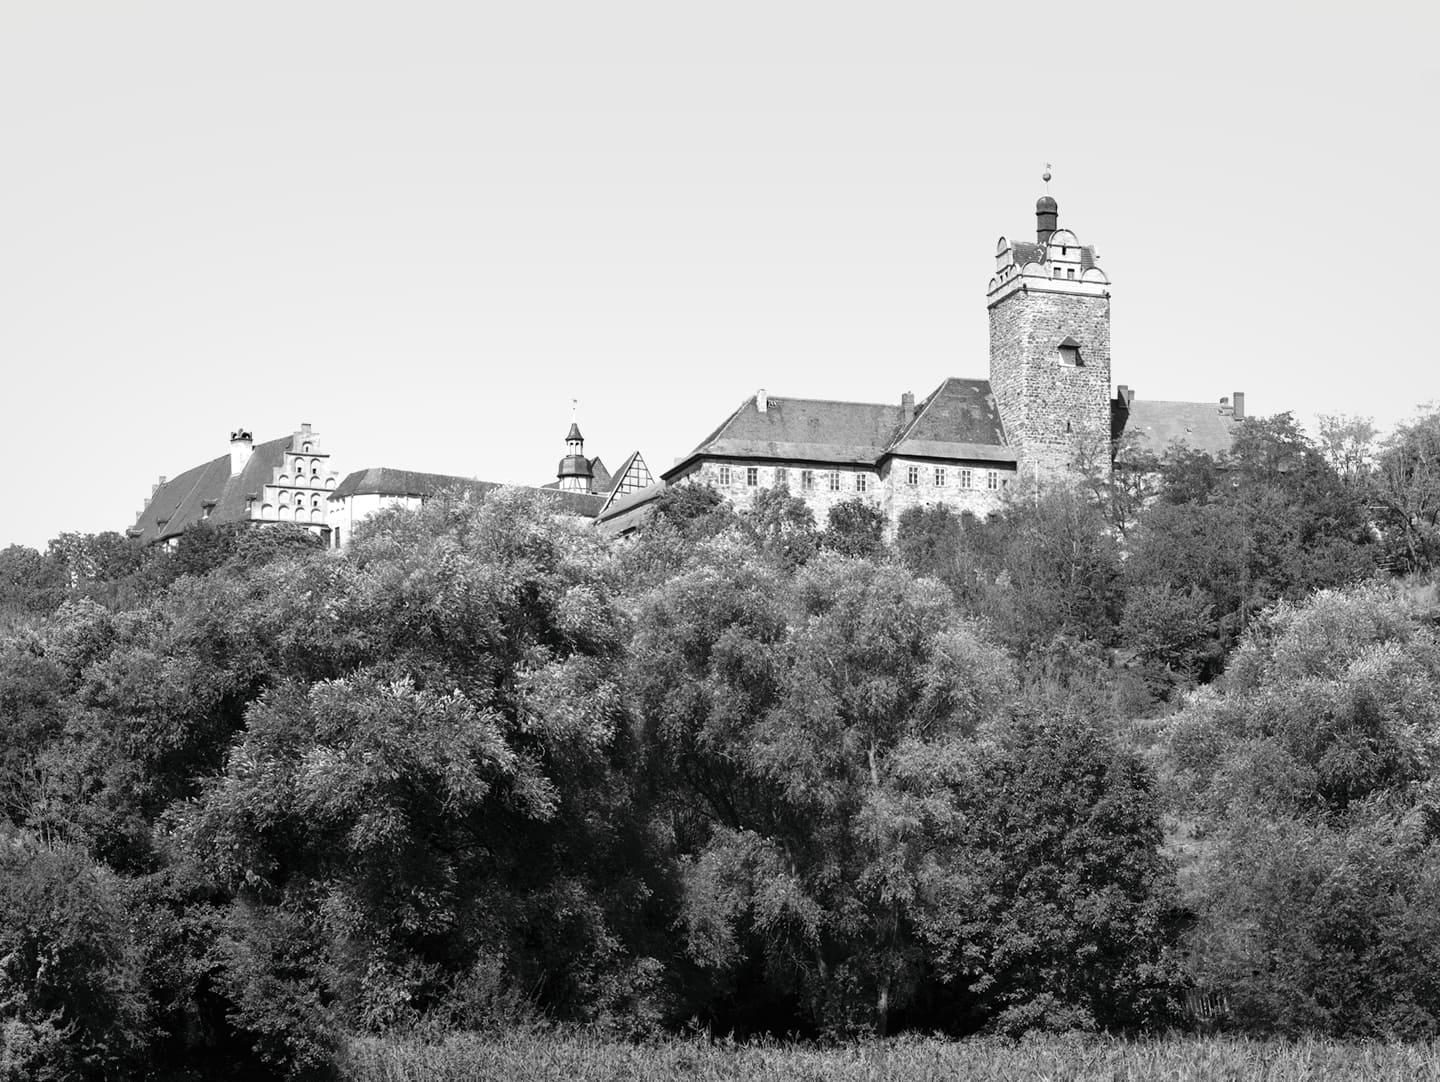 Industriekultur – Schloss und Burg Allstedt